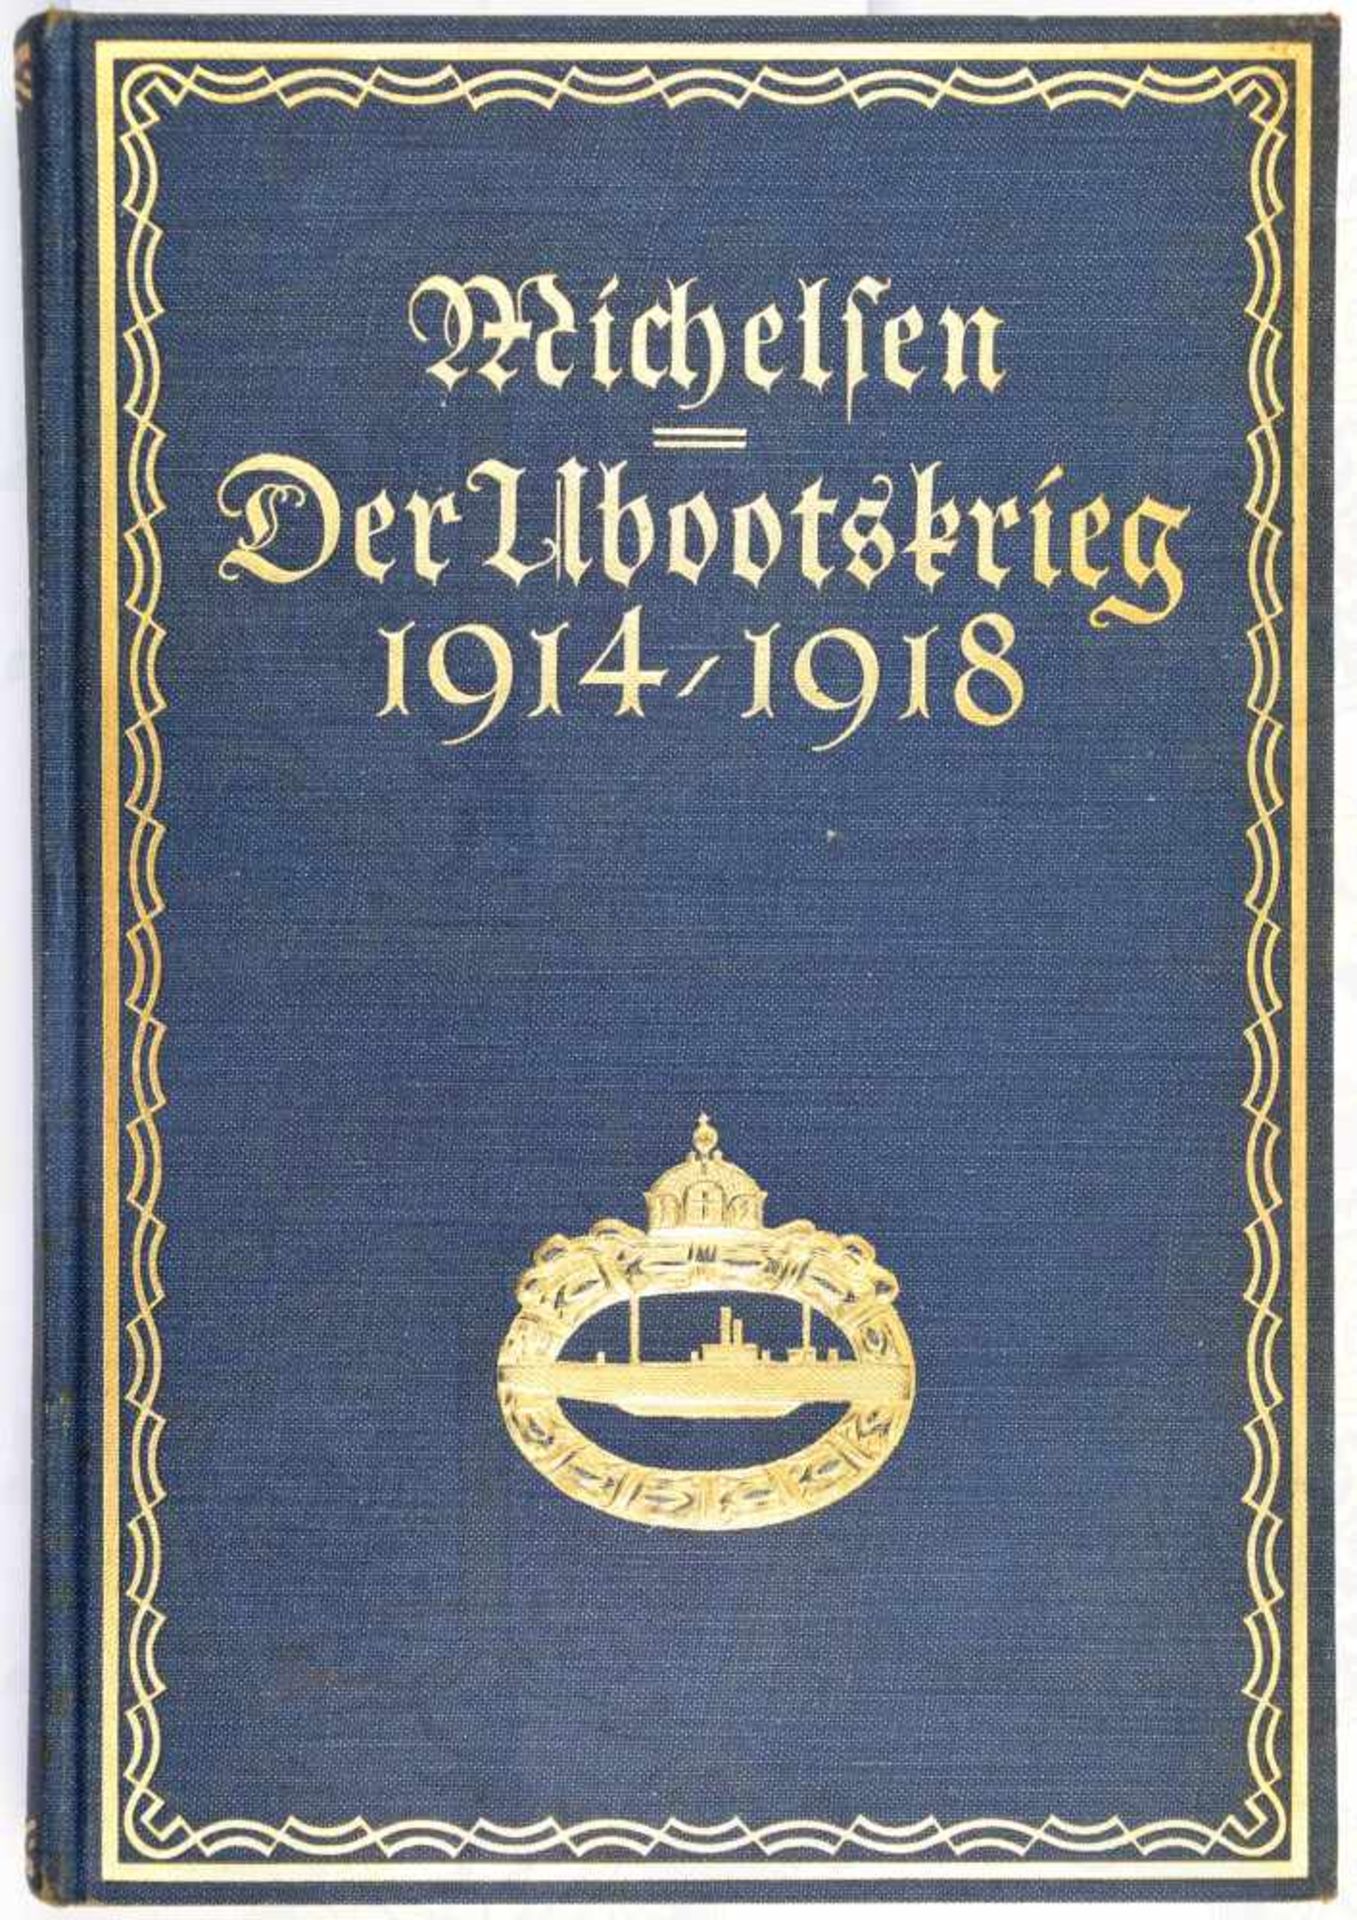 DER UBOOTSKRIEG 1914-1918, Andrea Michelsen, Leipzig 1925, Fotos, Abb. und Karten, 207 S., goldgepr.